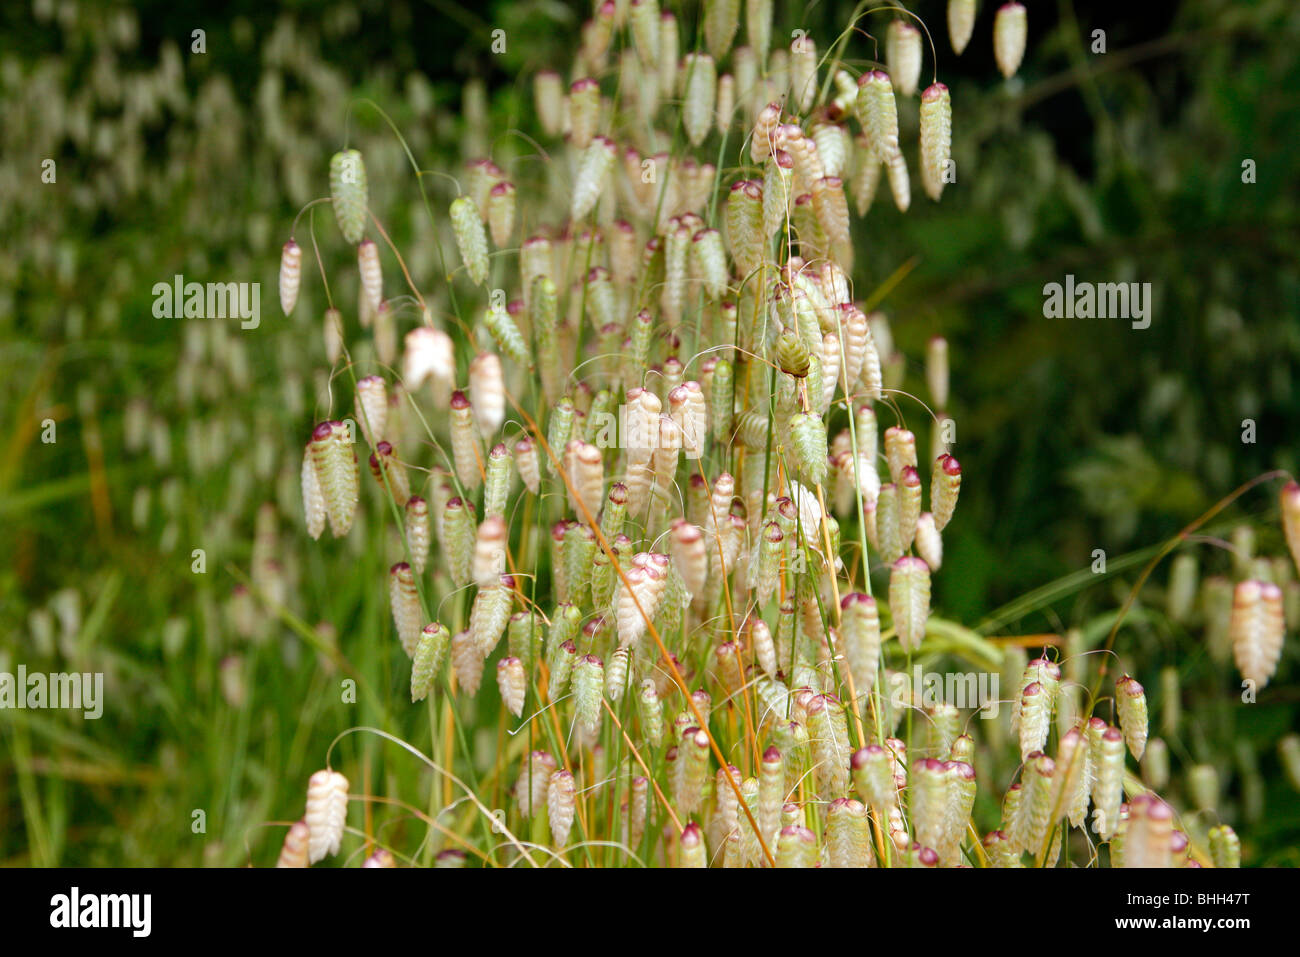 Briza maxima - Large Quaking Grass Stock Photo